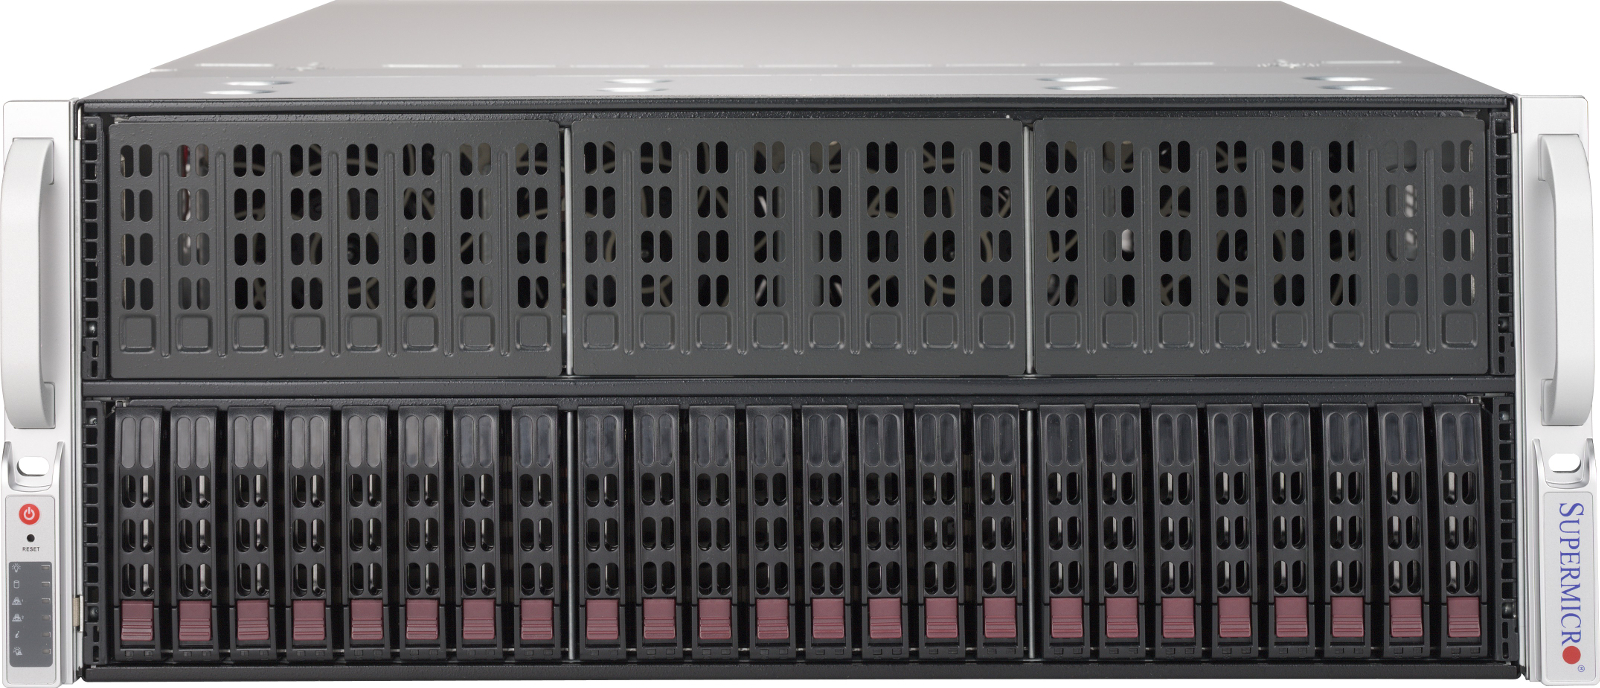 Серверная платформа SuperMicro SYS-4029GP-TRT, 4U, 2 x LGA3647, Intel C622, 24 x DDR4, 24 x 2.5" SATA, 2x10 Gigabit Ethernet (10 Гбит/с), 2000 Вт